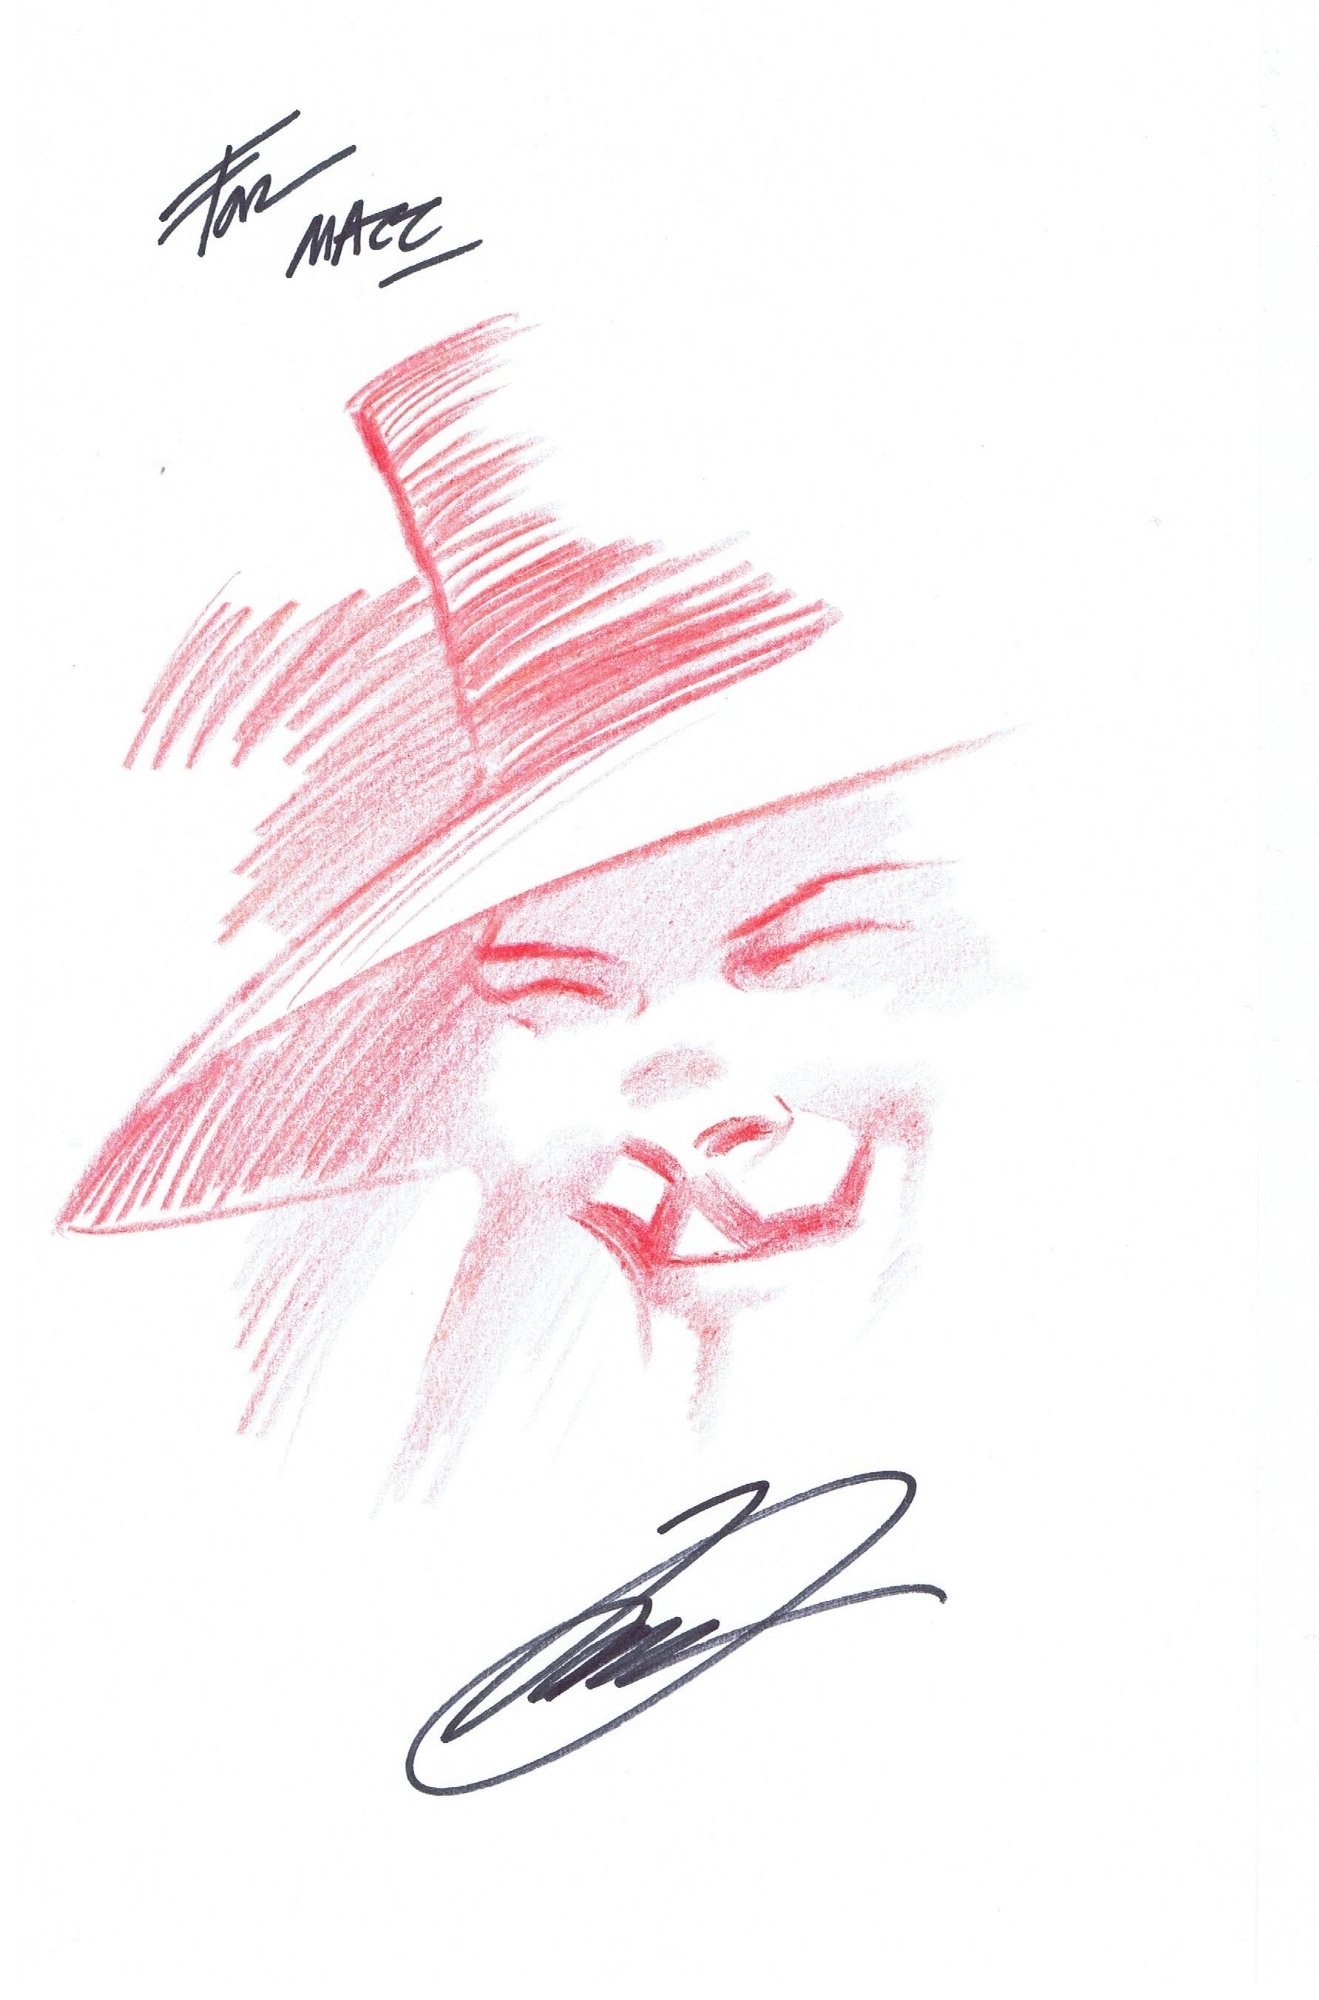 David Lloyd - V for Vendetta (Guy Fawkes) Sketch, in Matt Moore's 